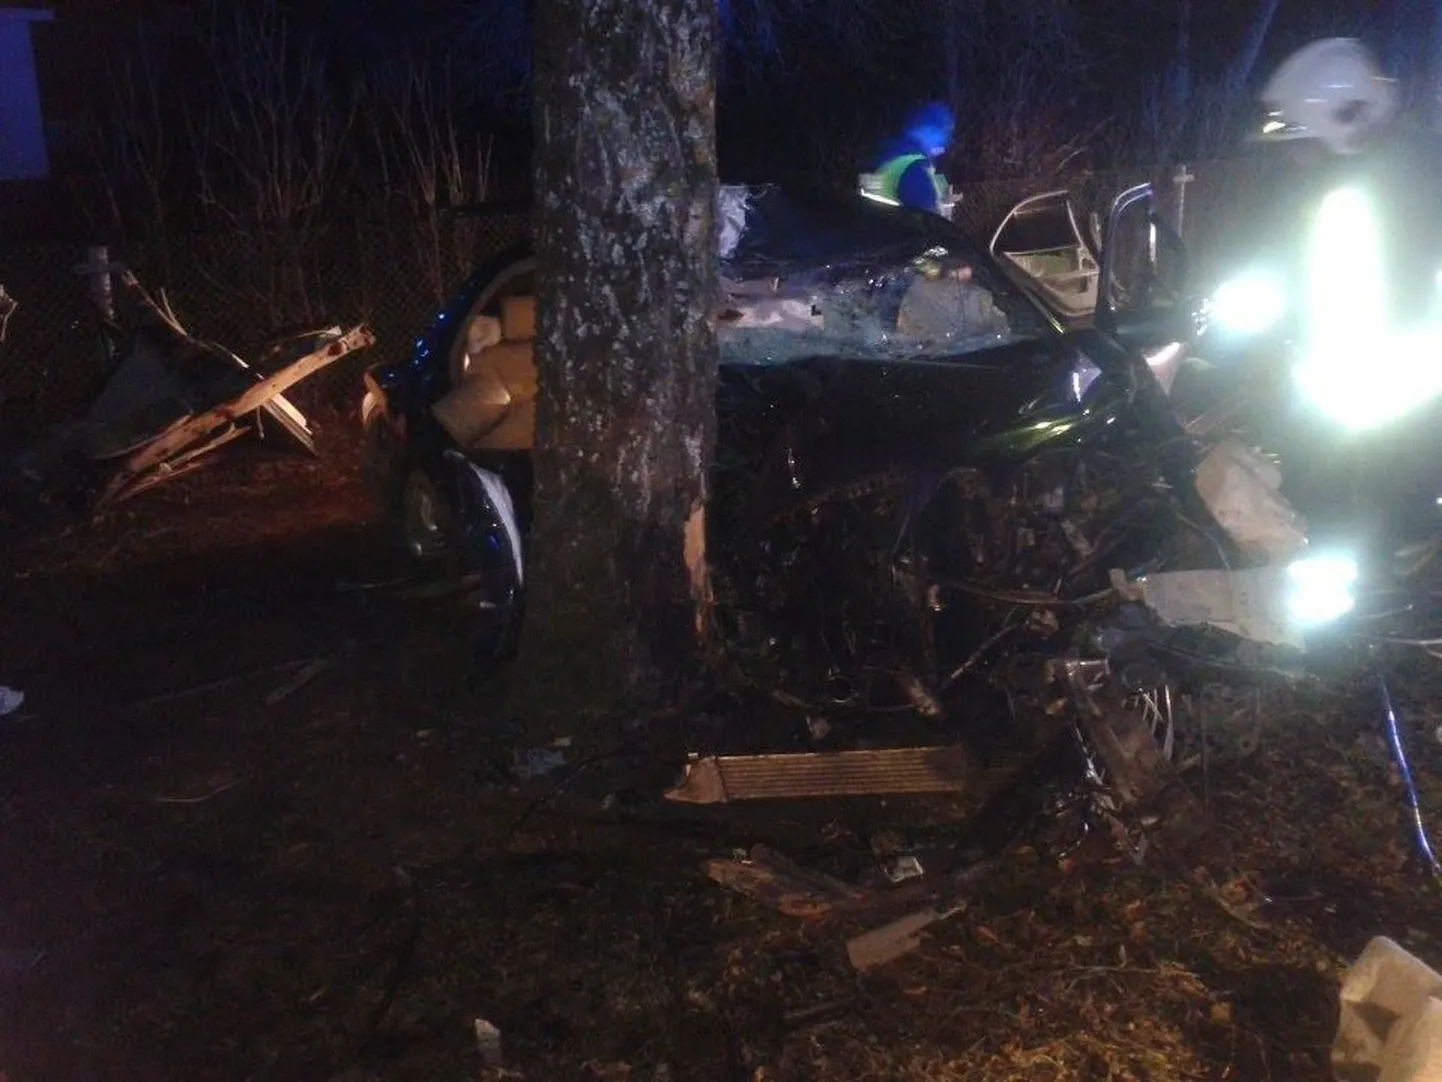 2014. aasta 1. jaanuari varahommikul juhtus raske liiklusõnnetus Rakveres Tartu tänaval. Avarii tagajärjel raskelt viga saanud kaasreisija, 25aastane Getter, suri järgmine päev haiglas.